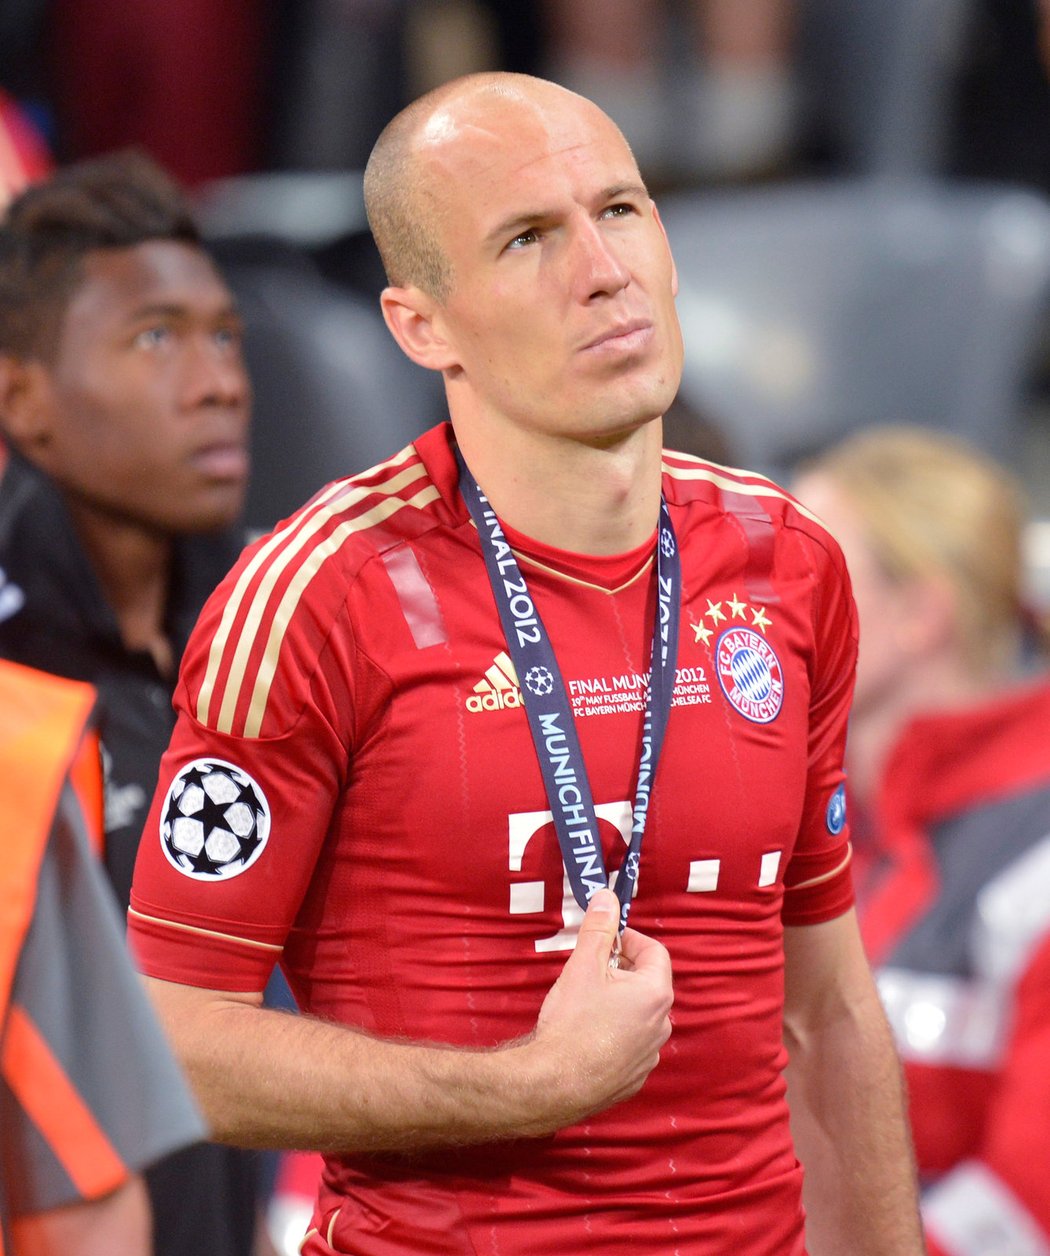 Smutný Robben po prohraném finále Ligy mistrů s Chelsea dostal medaili za druhé místo v soutěži